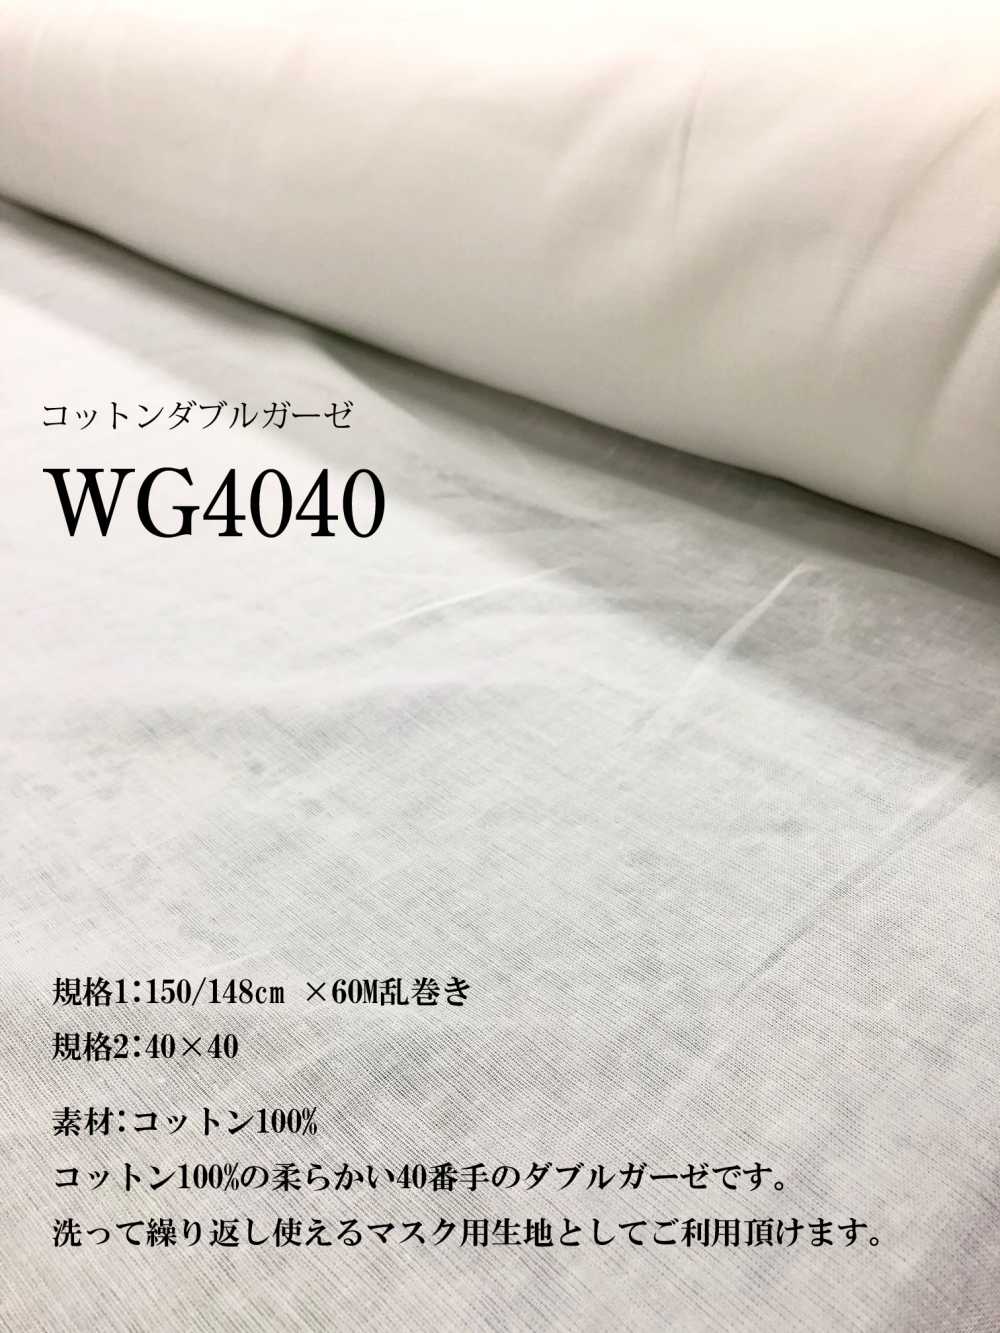 WG4040 Vải Gạc đôi Cotton Rộng 40 X 40 Okura Shoji